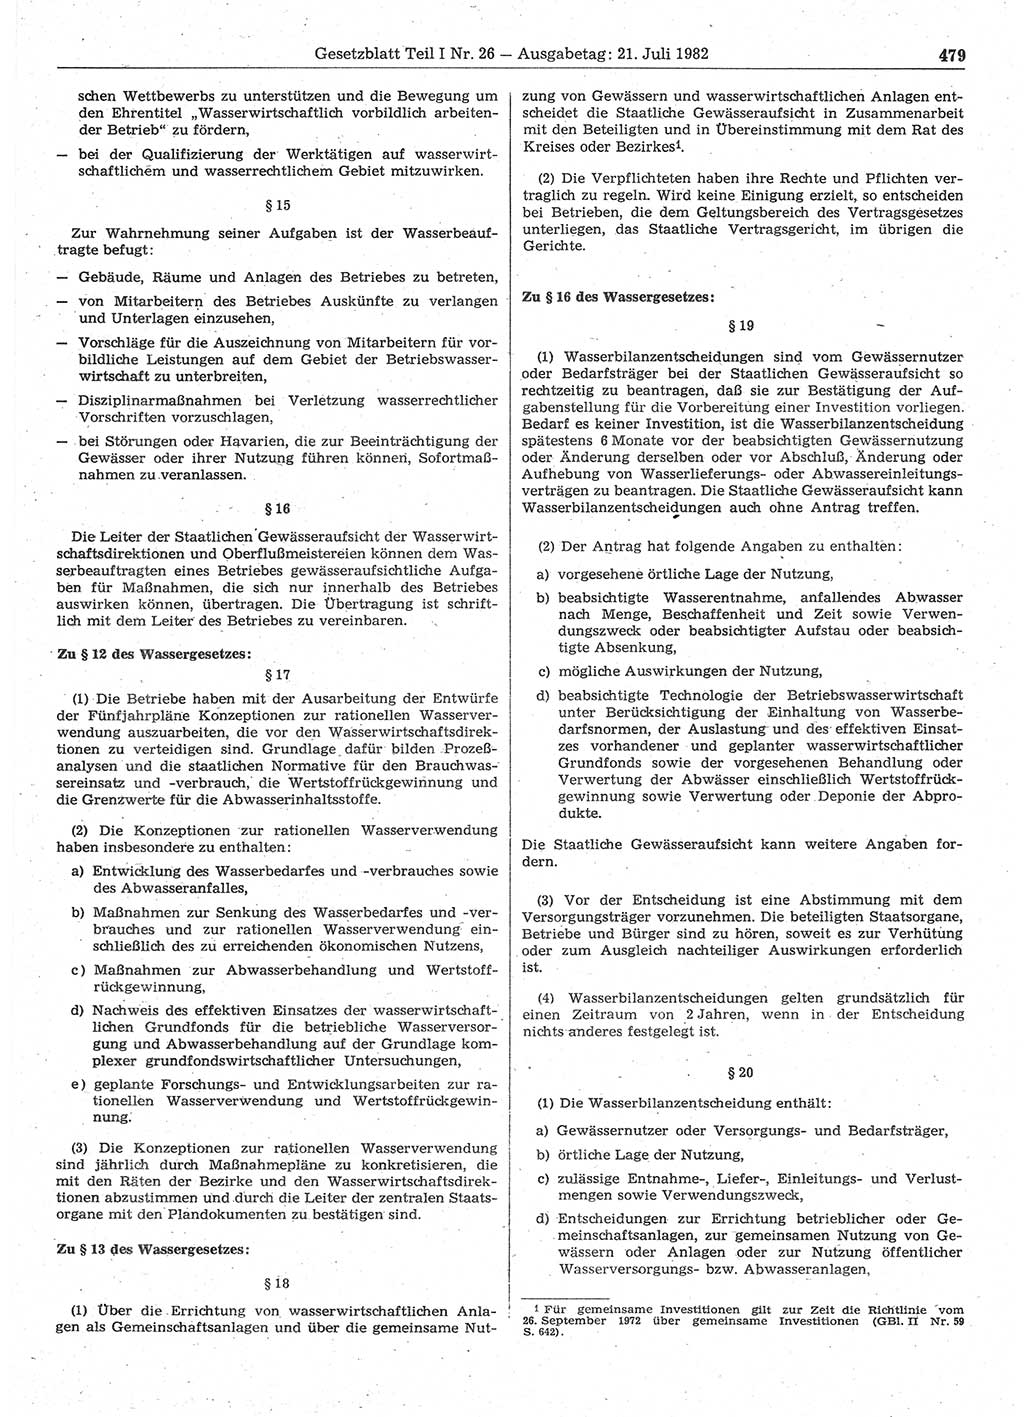 Gesetzblatt (GBl.) der Deutschen Demokratischen Republik (DDR) Teil Ⅰ 1982, Seite 479 (GBl. DDR Ⅰ 1982, S. 479)